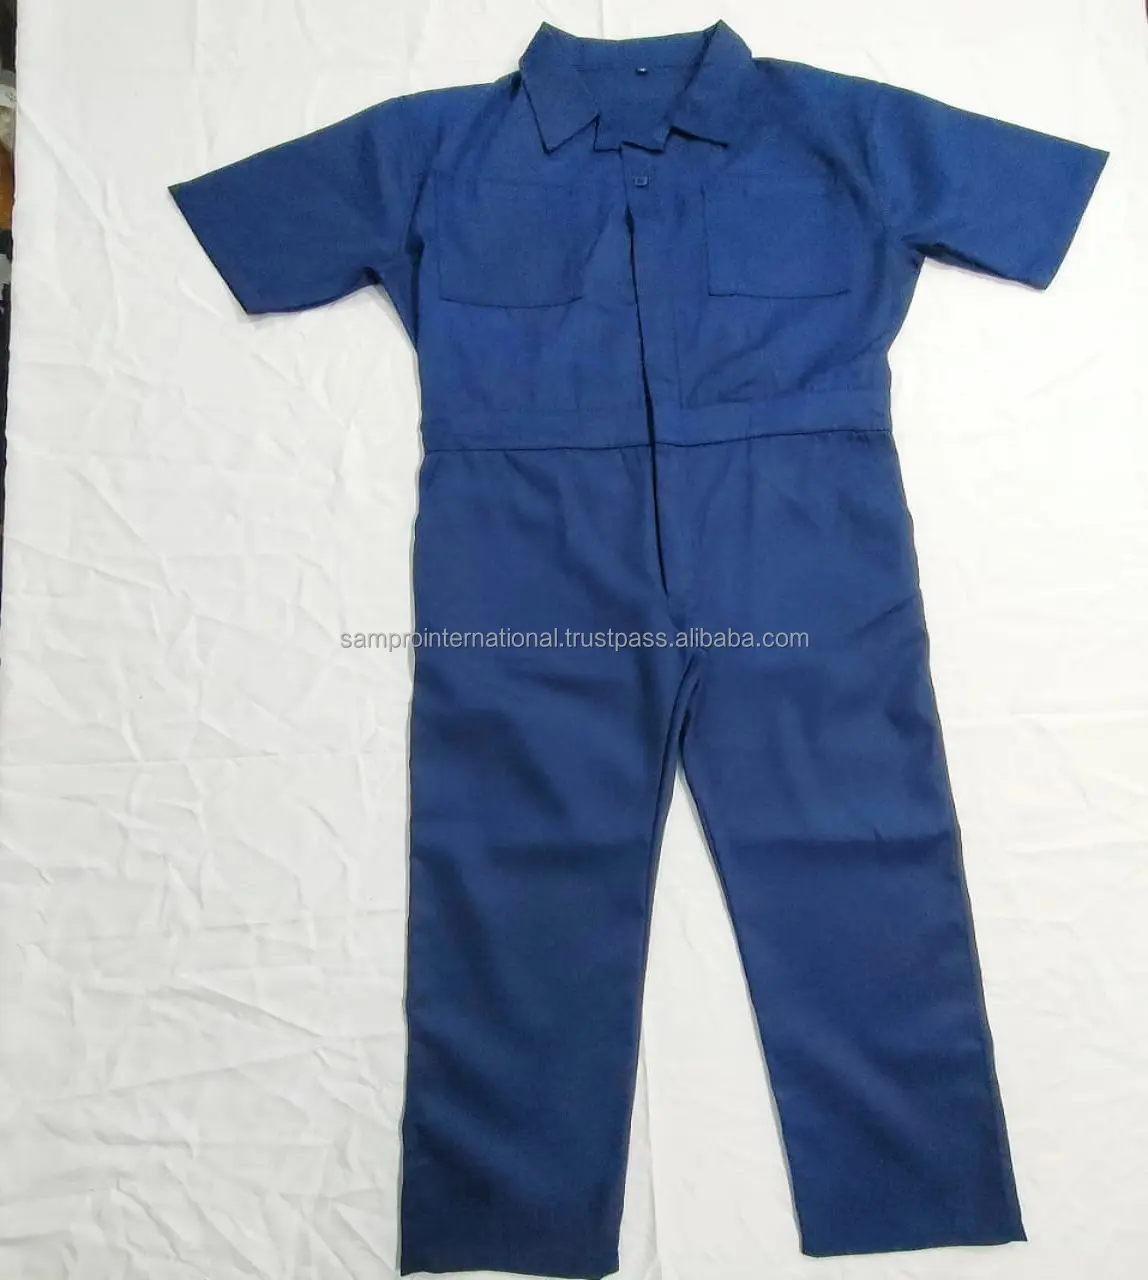 Toptan OEM yeni varış genel pamuk yapılan özel tulum çalışma üniforması dicki tulum takım elbise erkekler kısa kollu çalışma seti